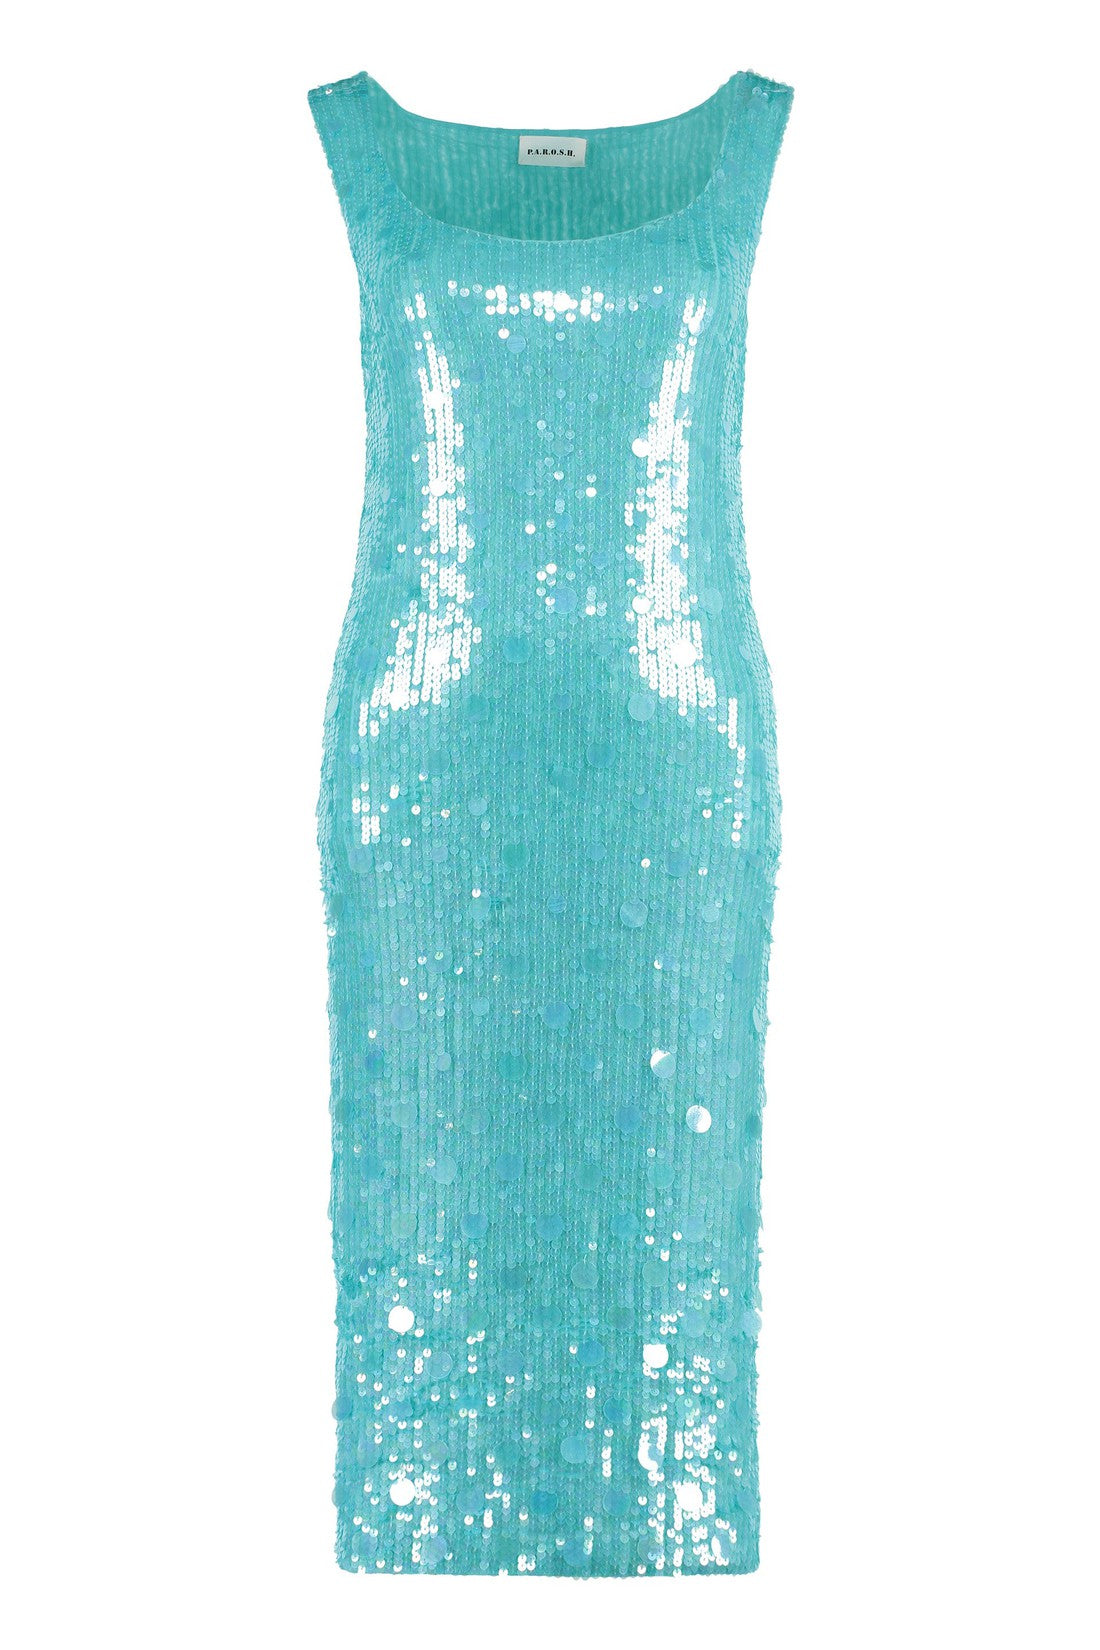 Parosh-OUTLET-SALE-Sequin dress-ARCHIVIST